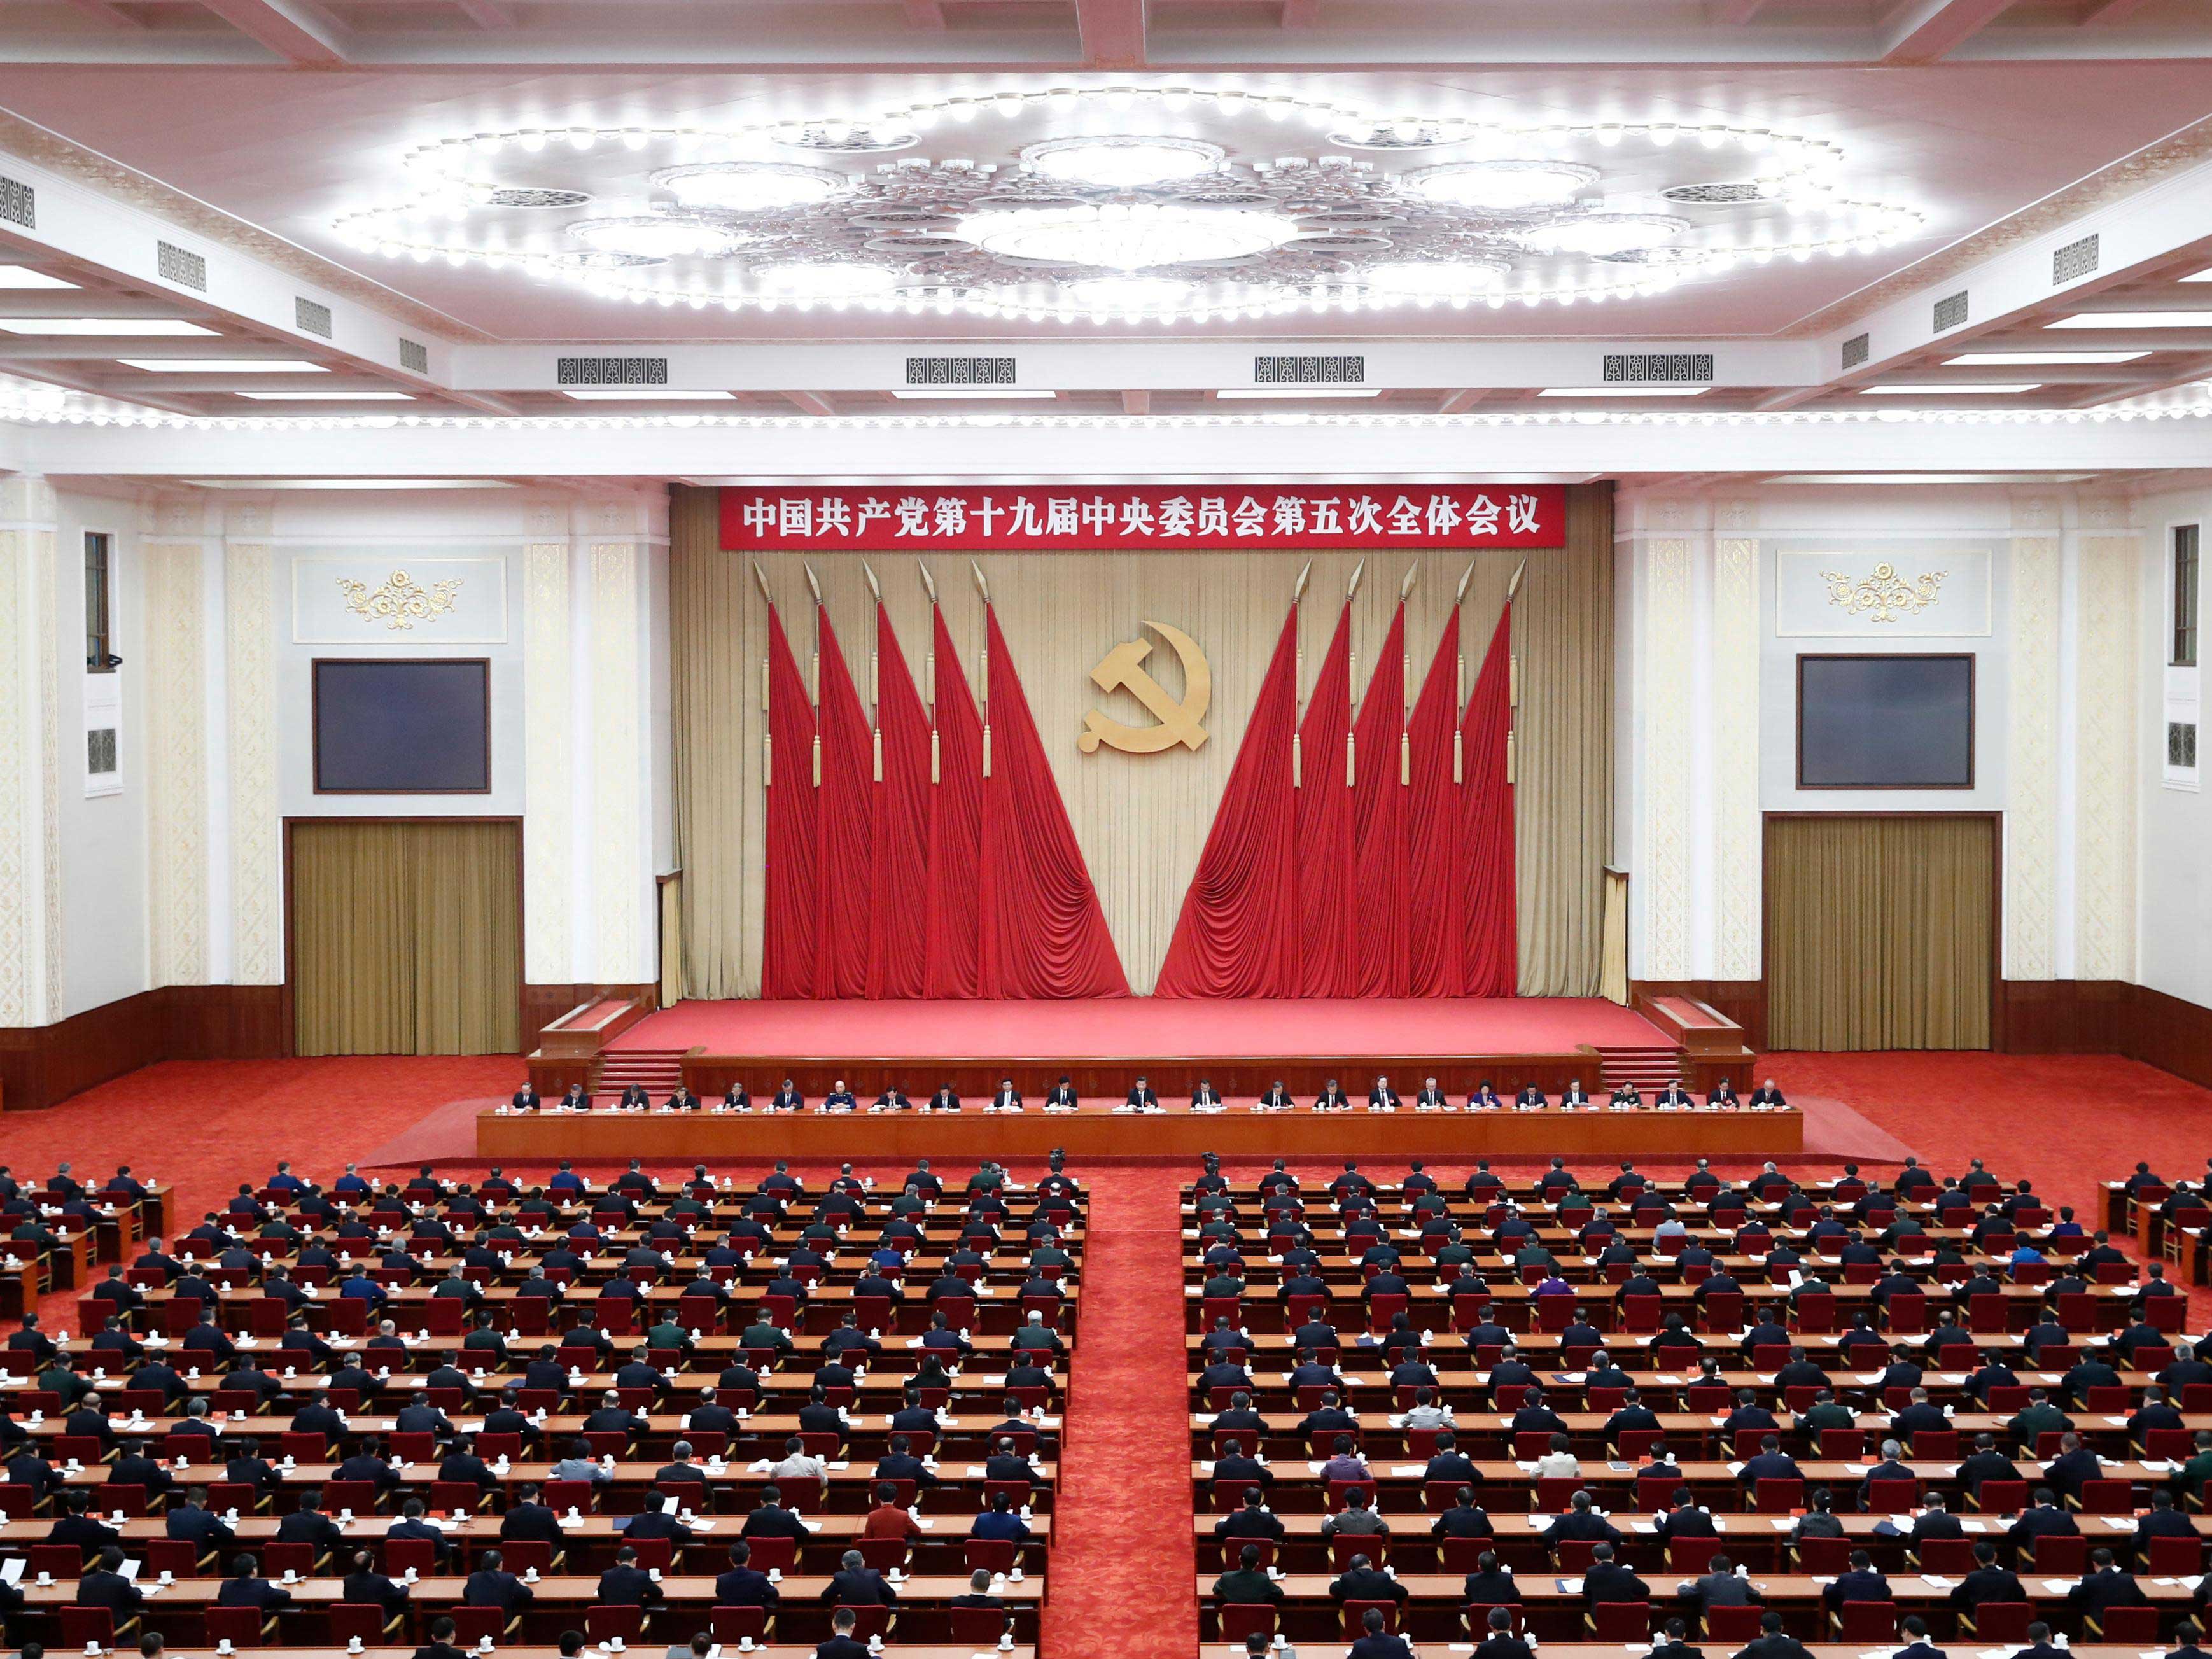 中国共产党第十九届中央委员会第五次全体会议，于2020年10月26日至29日在北京举行。